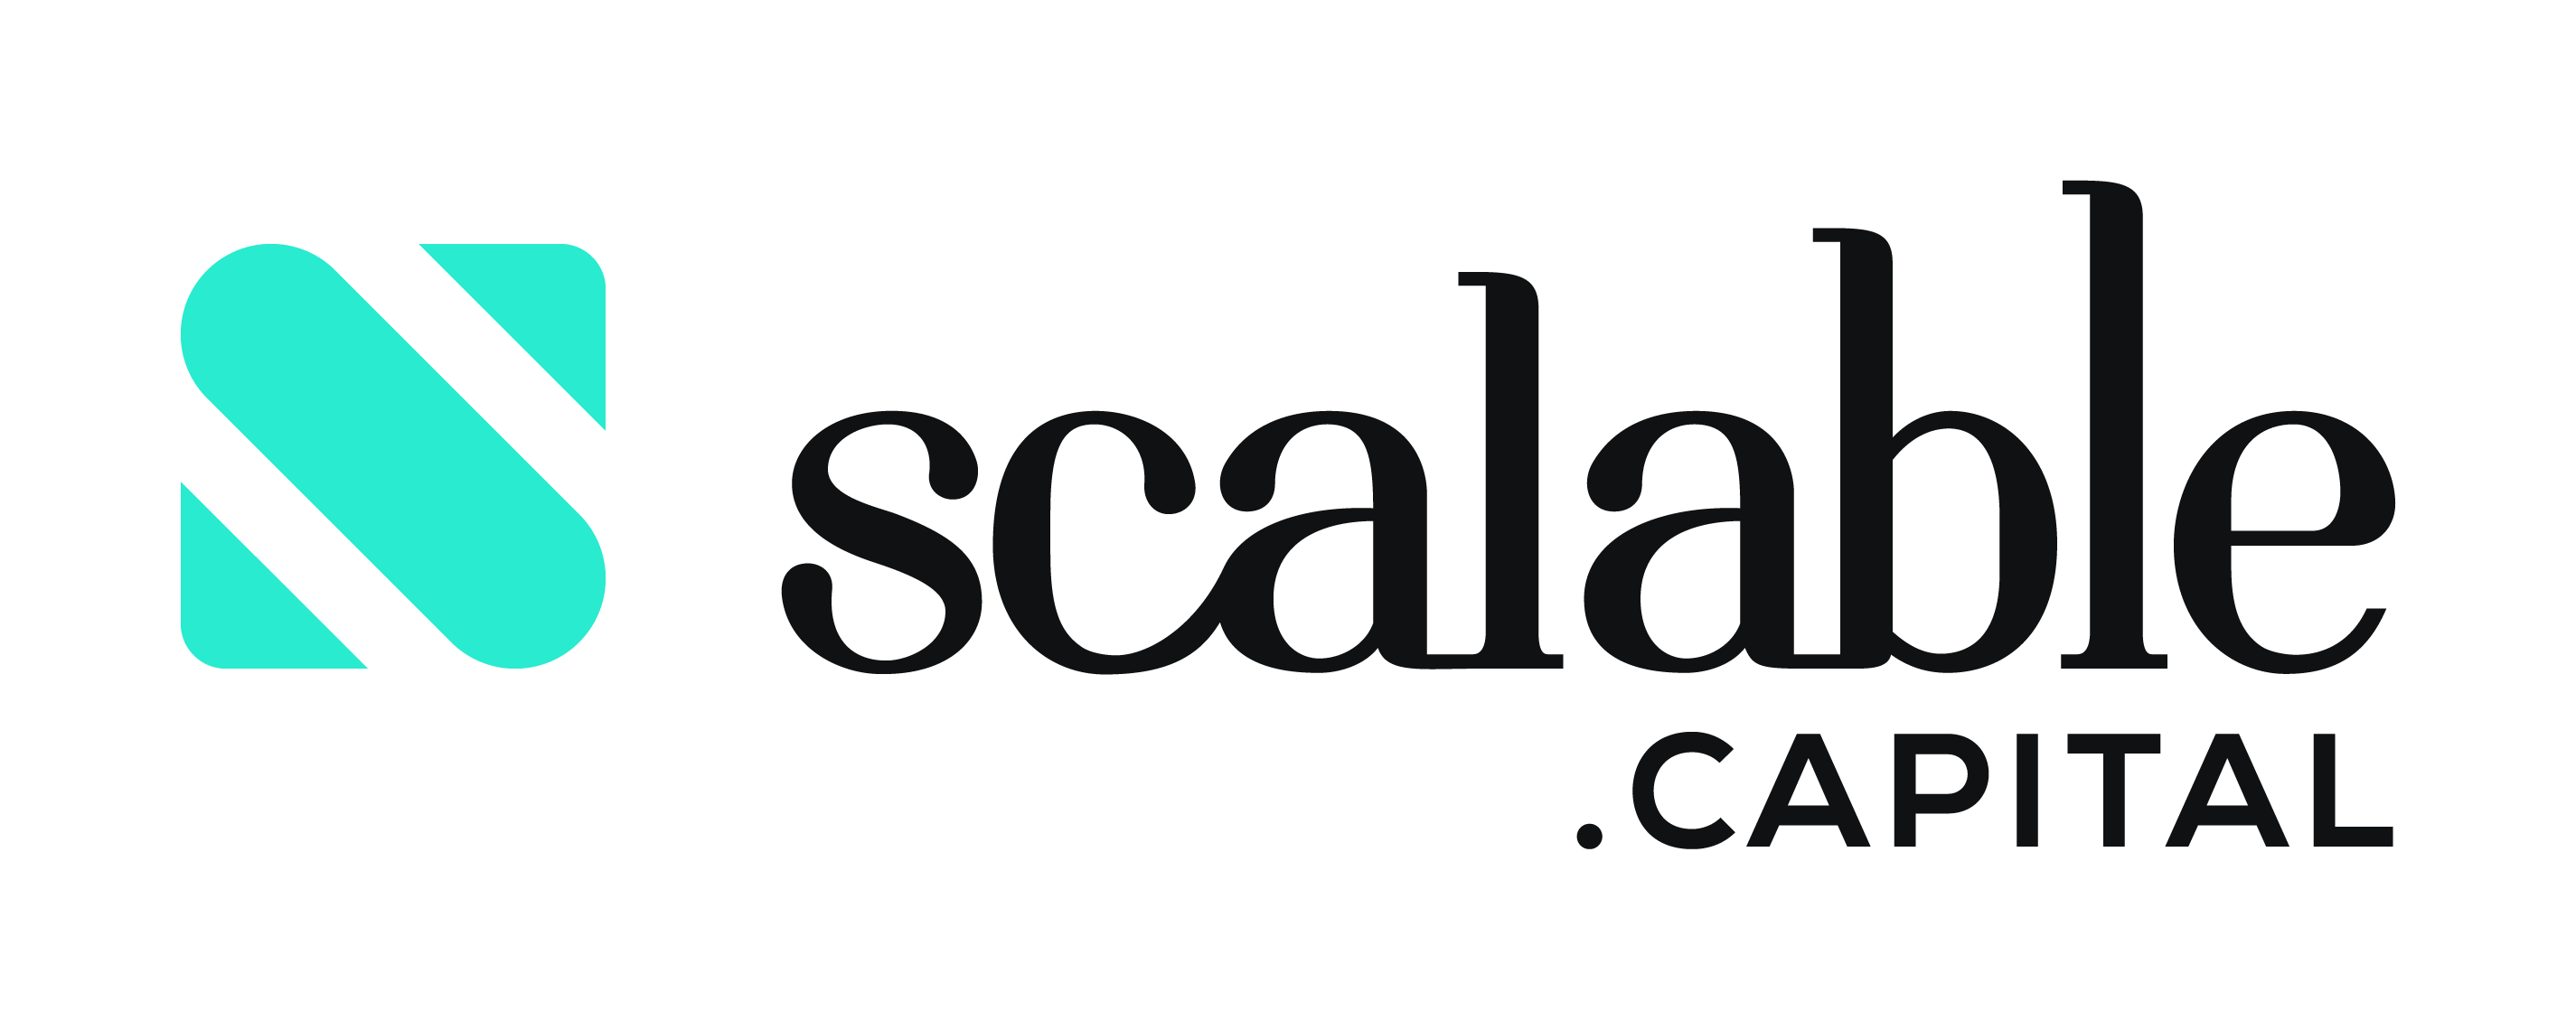 logo scalable